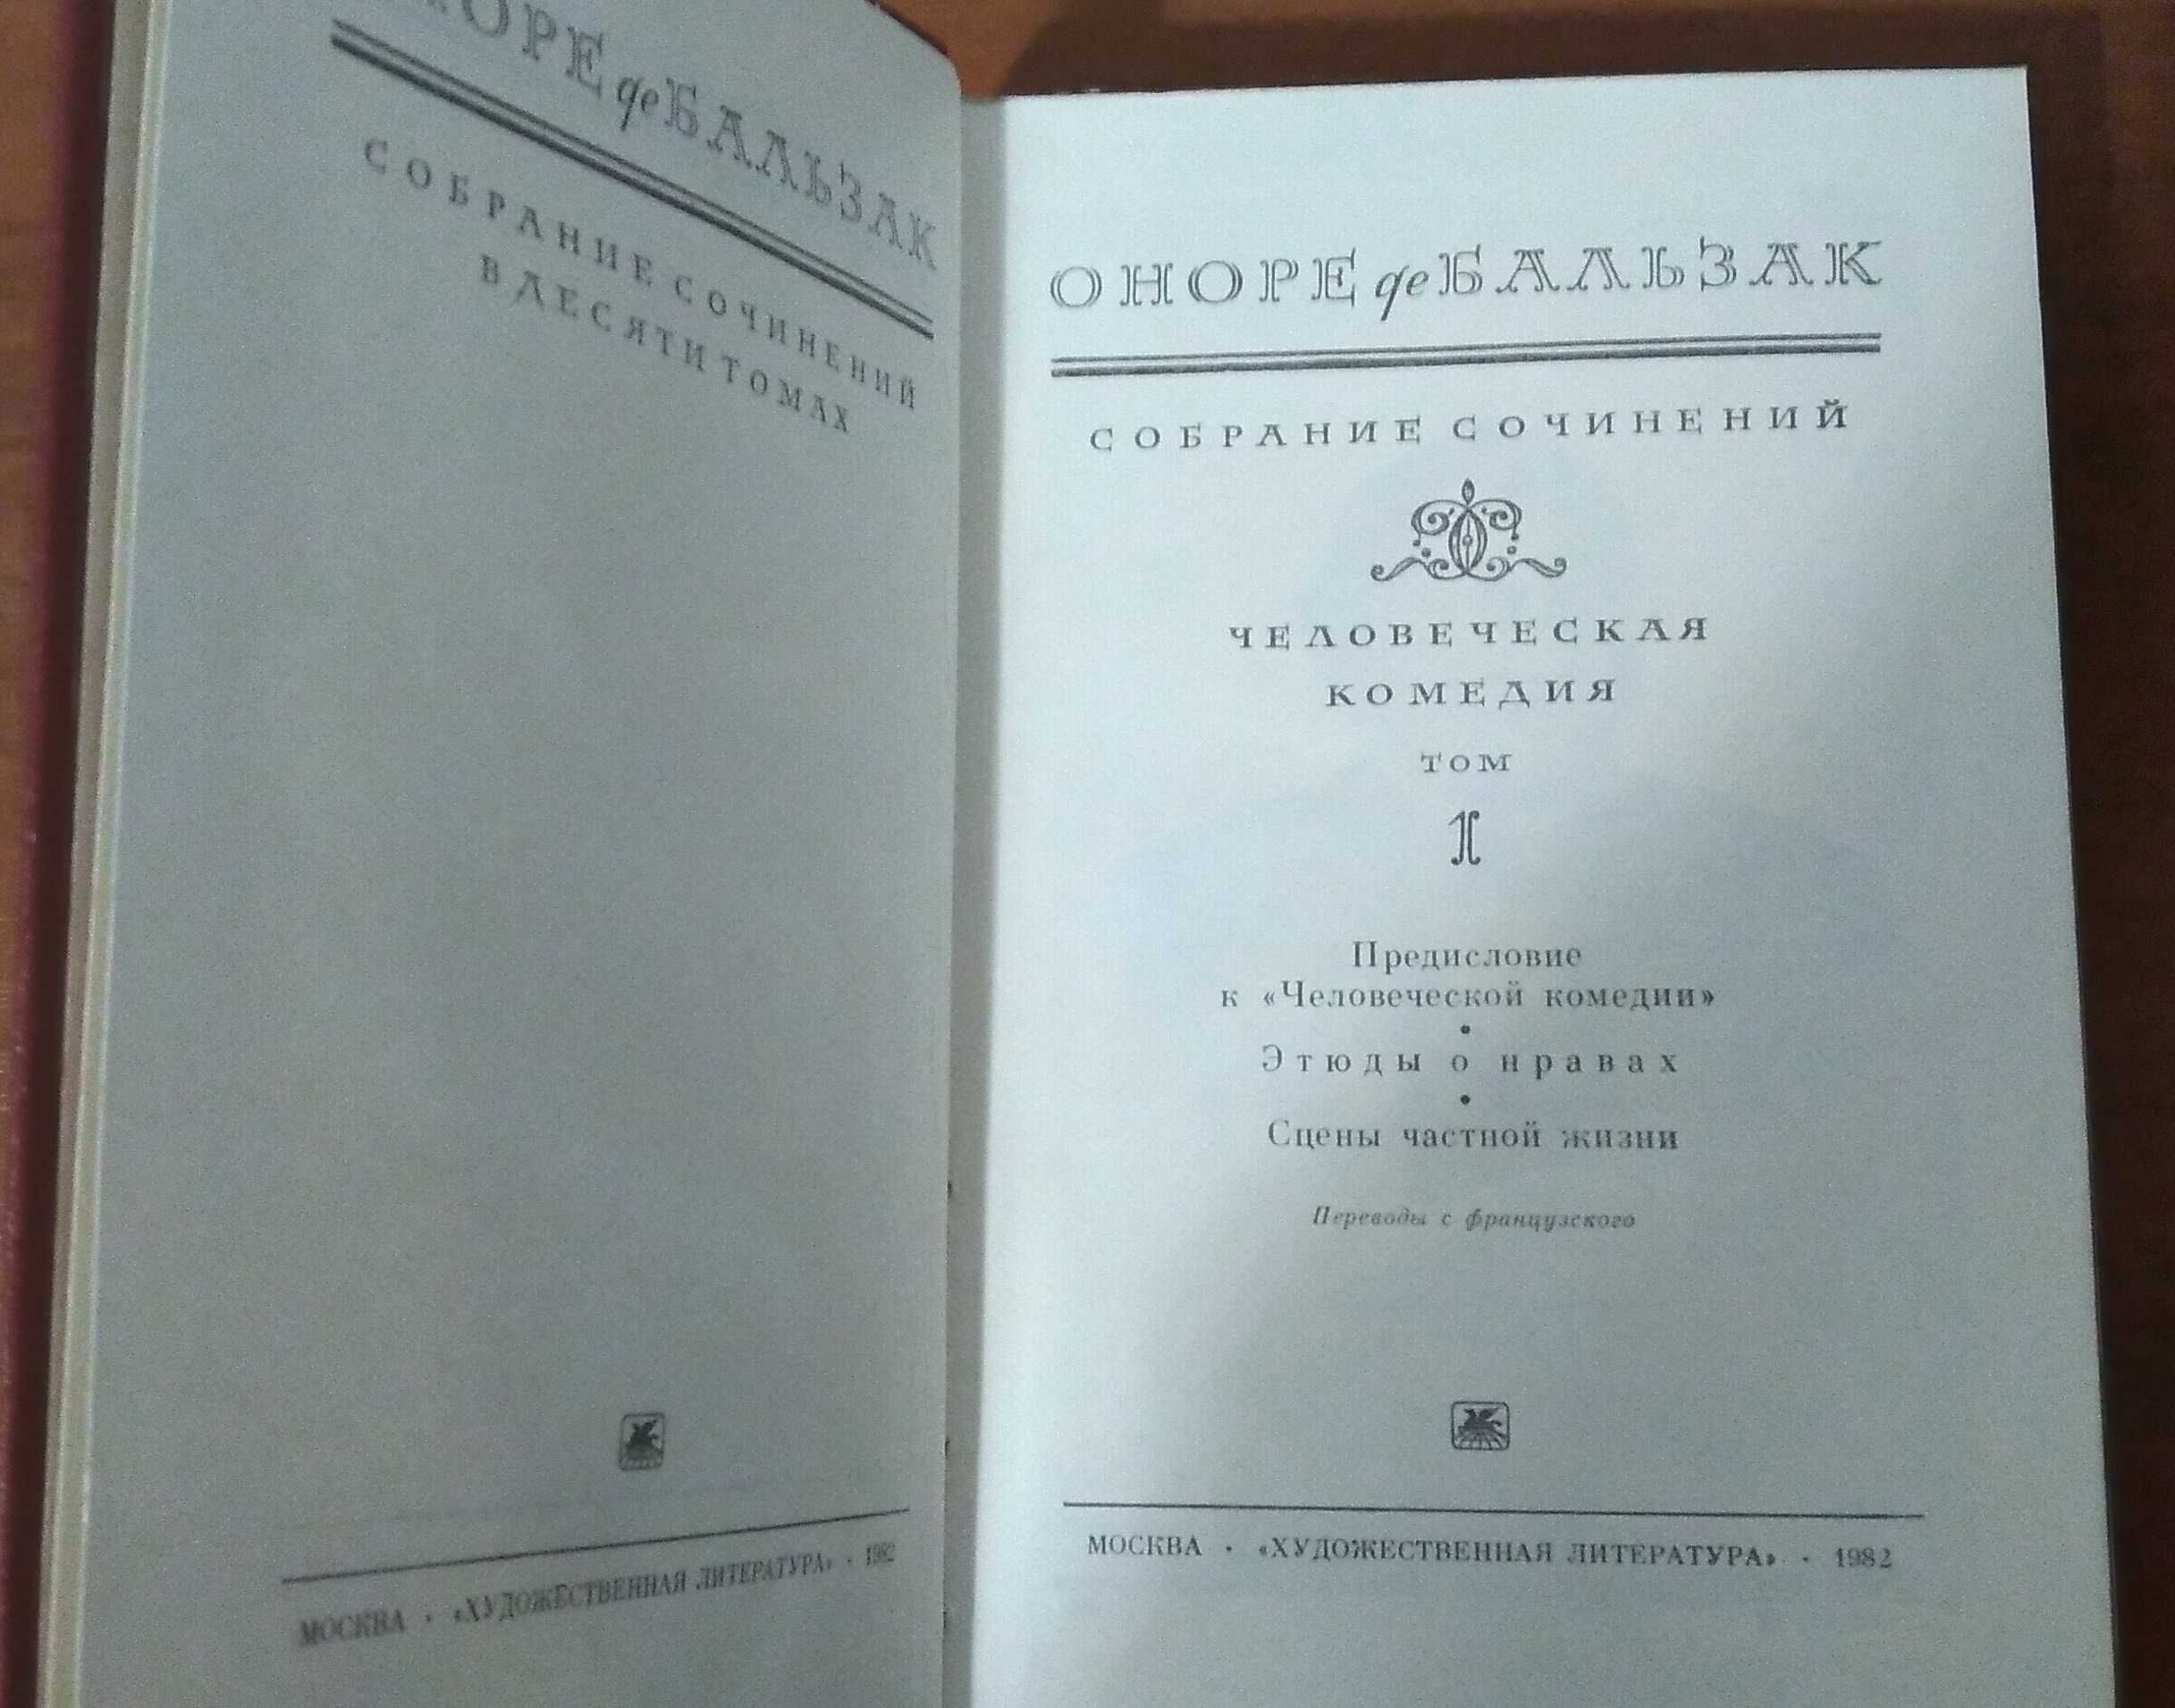 Оноре де Бальзак. Собрание сочинений в 10 томах